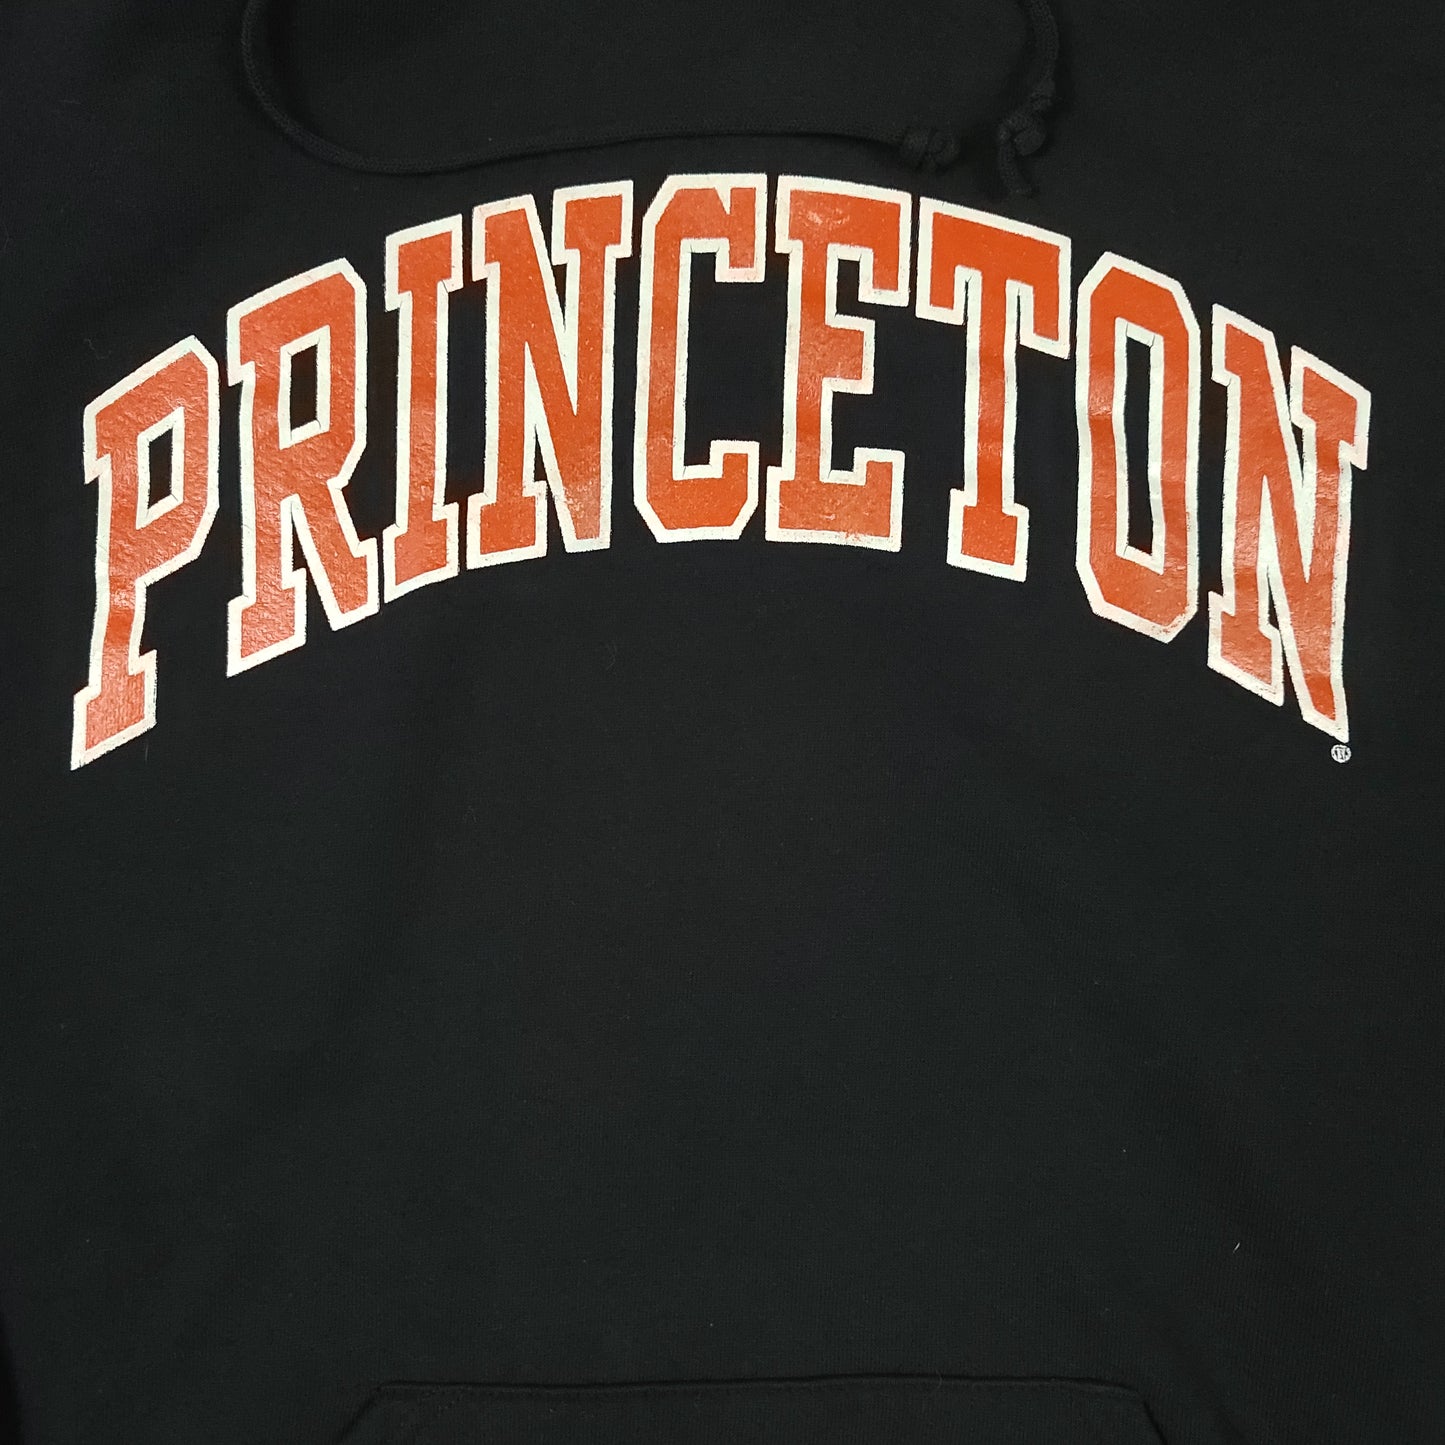 Vintage Princeton University Black Russell Athletic Hoodie